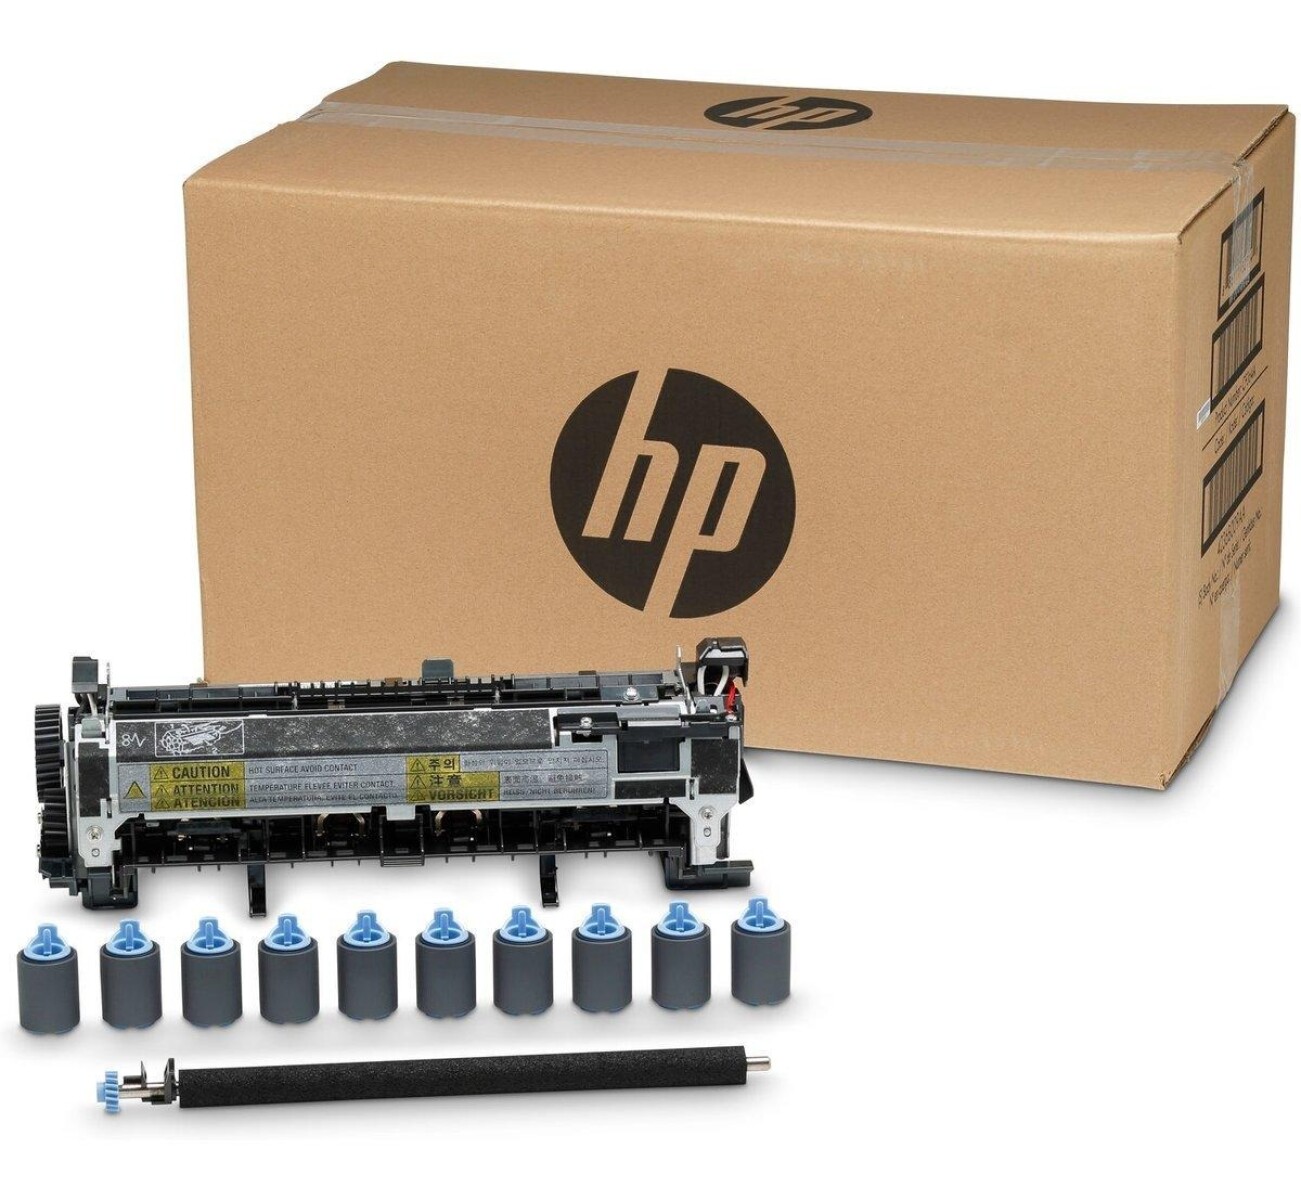 HP KIT DE MANTENIMIENTO CF065A M602/M601 - Hp Kit De Mantenimiento Cf065a M602/m601 